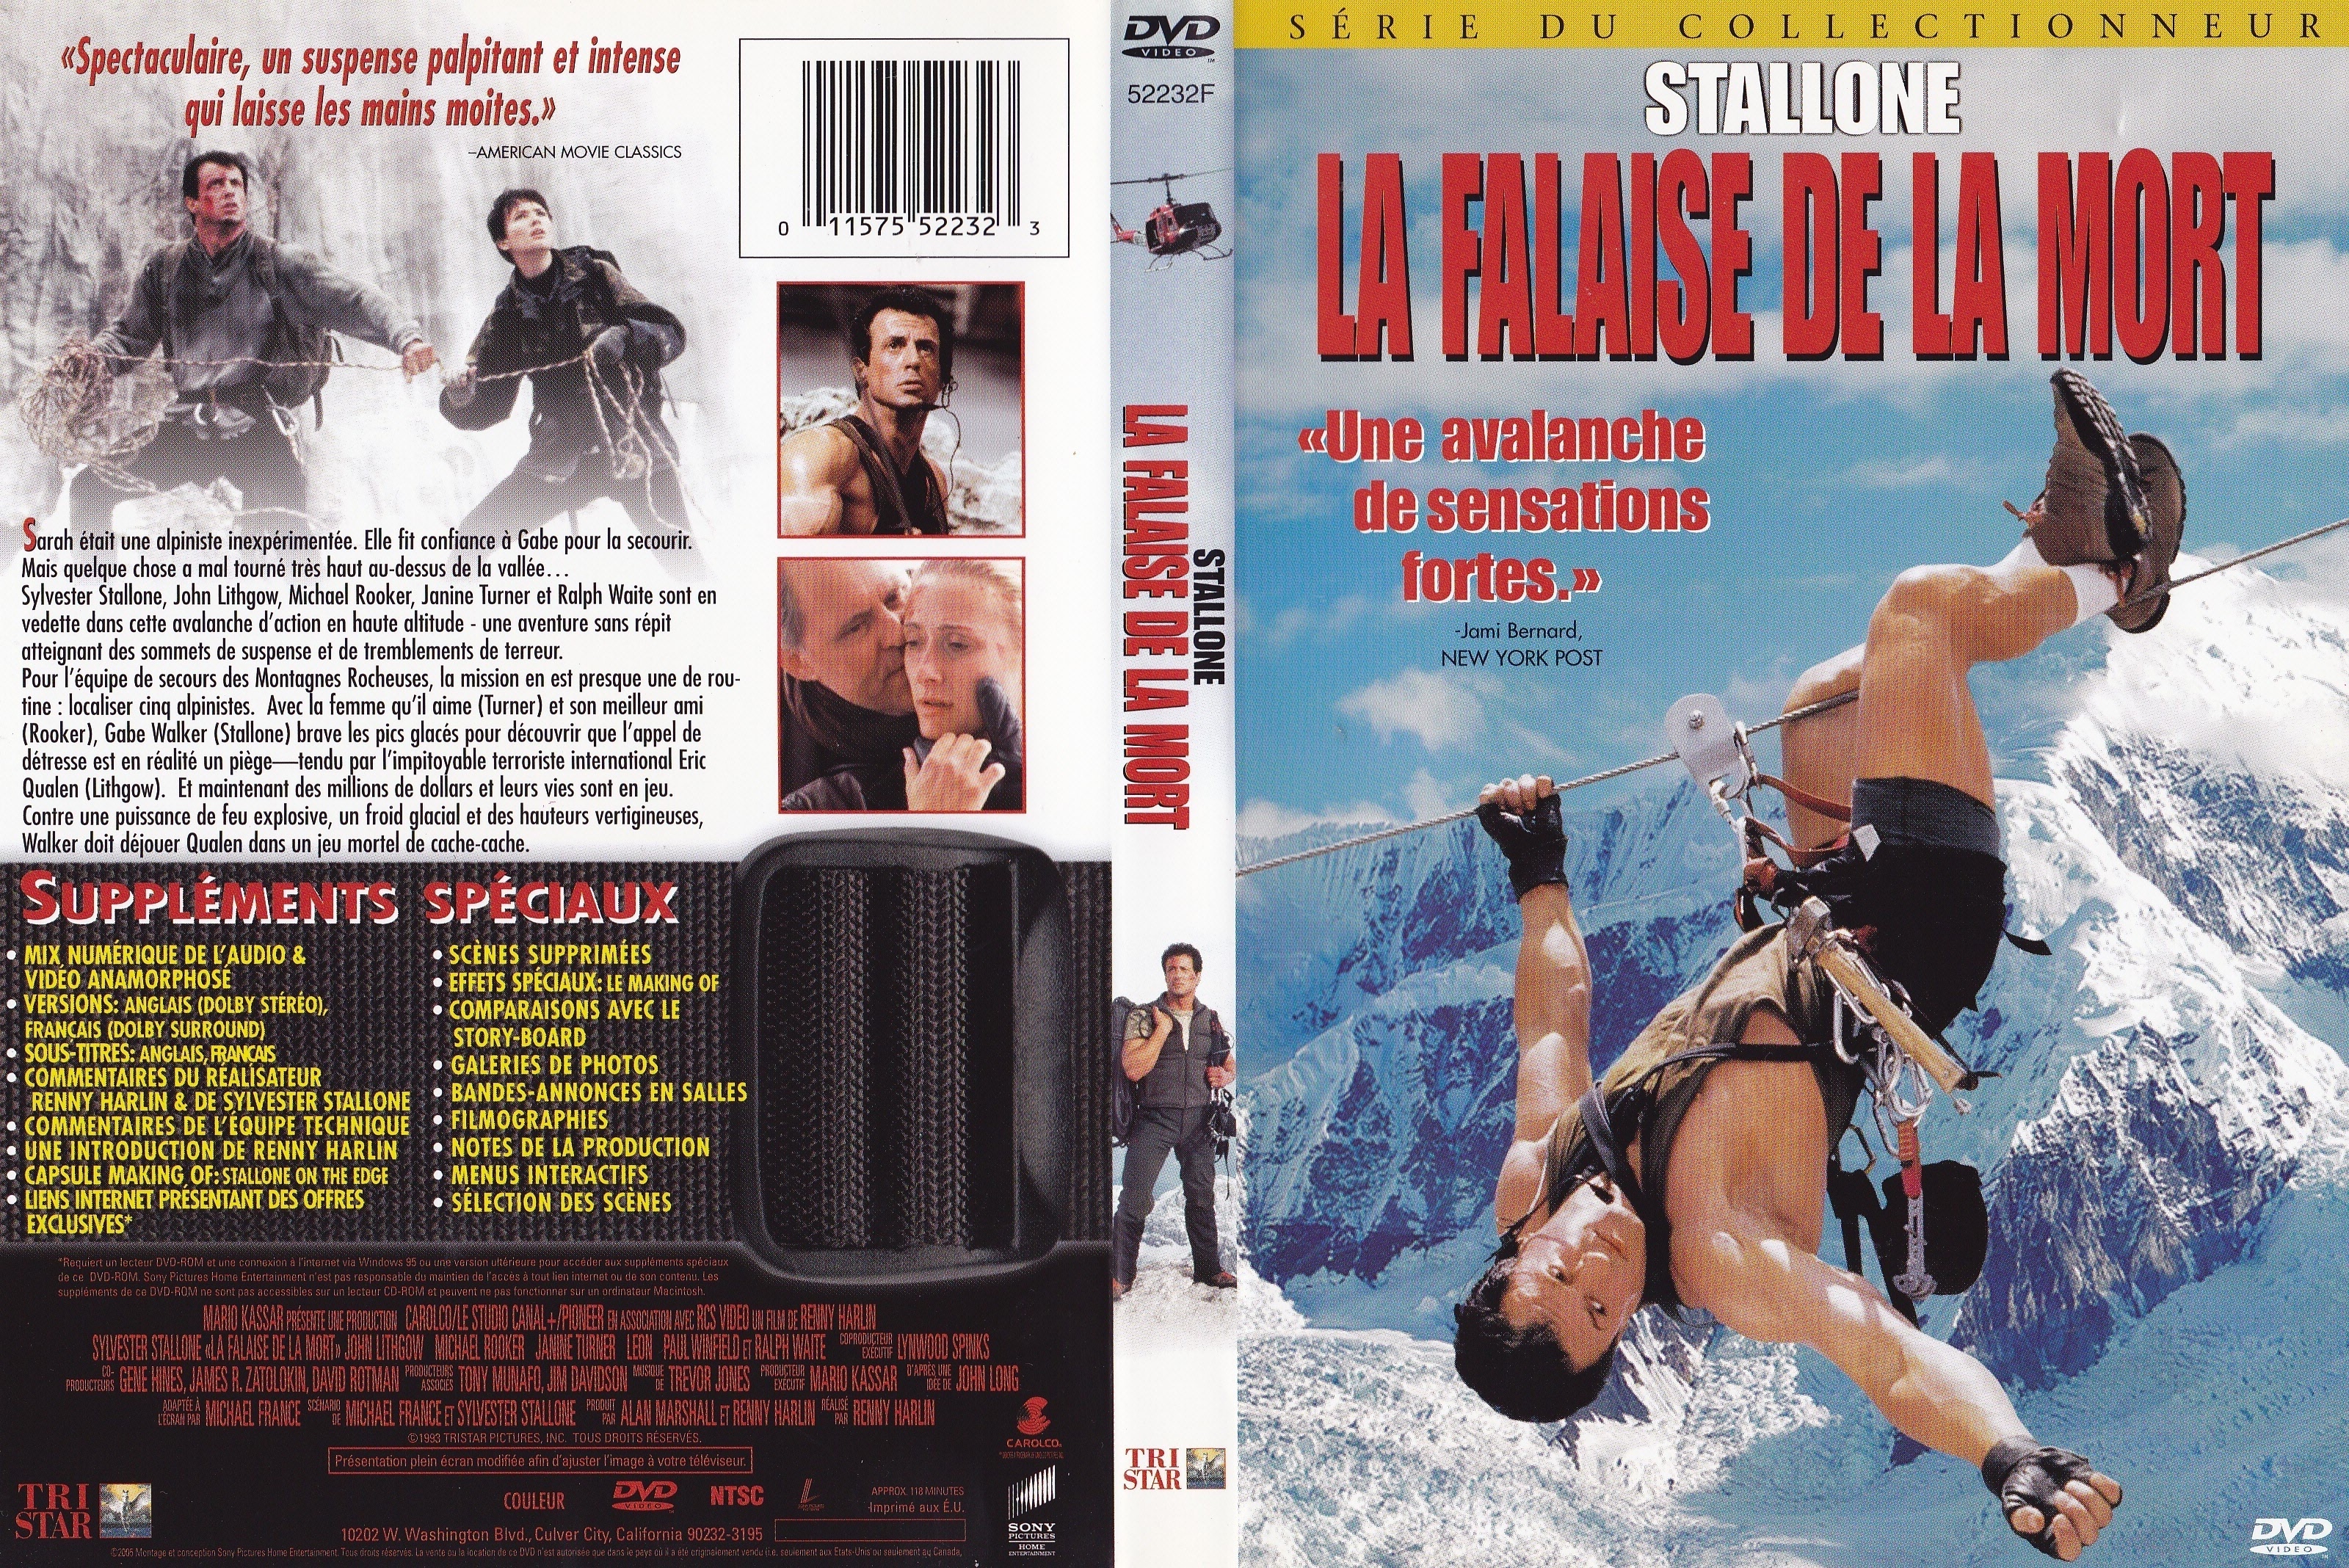 Jaquette DVD La falaise de la mort (Canadienne)